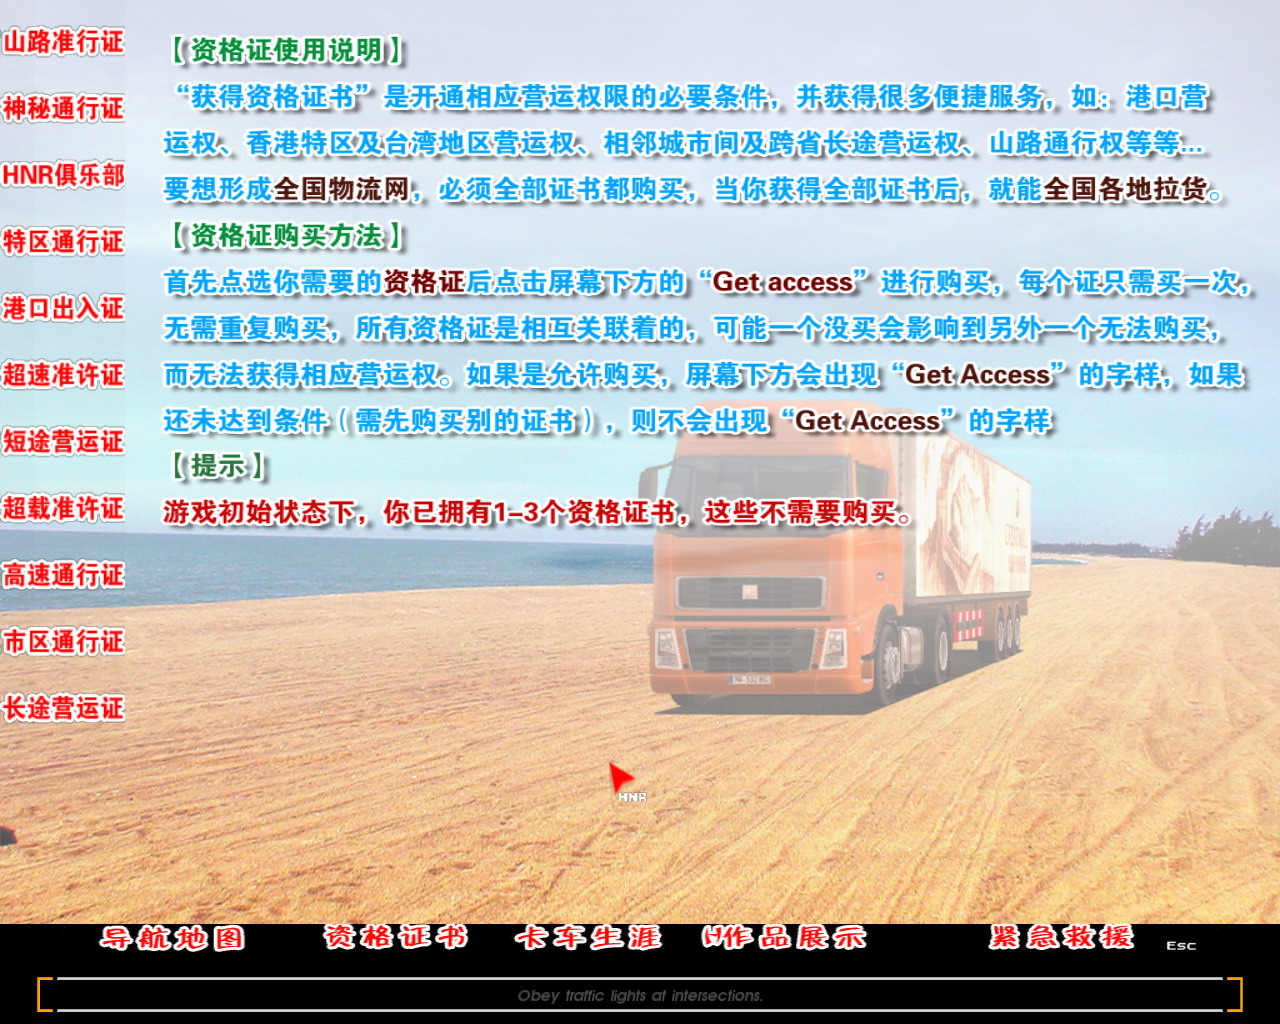 中國卡車模擬